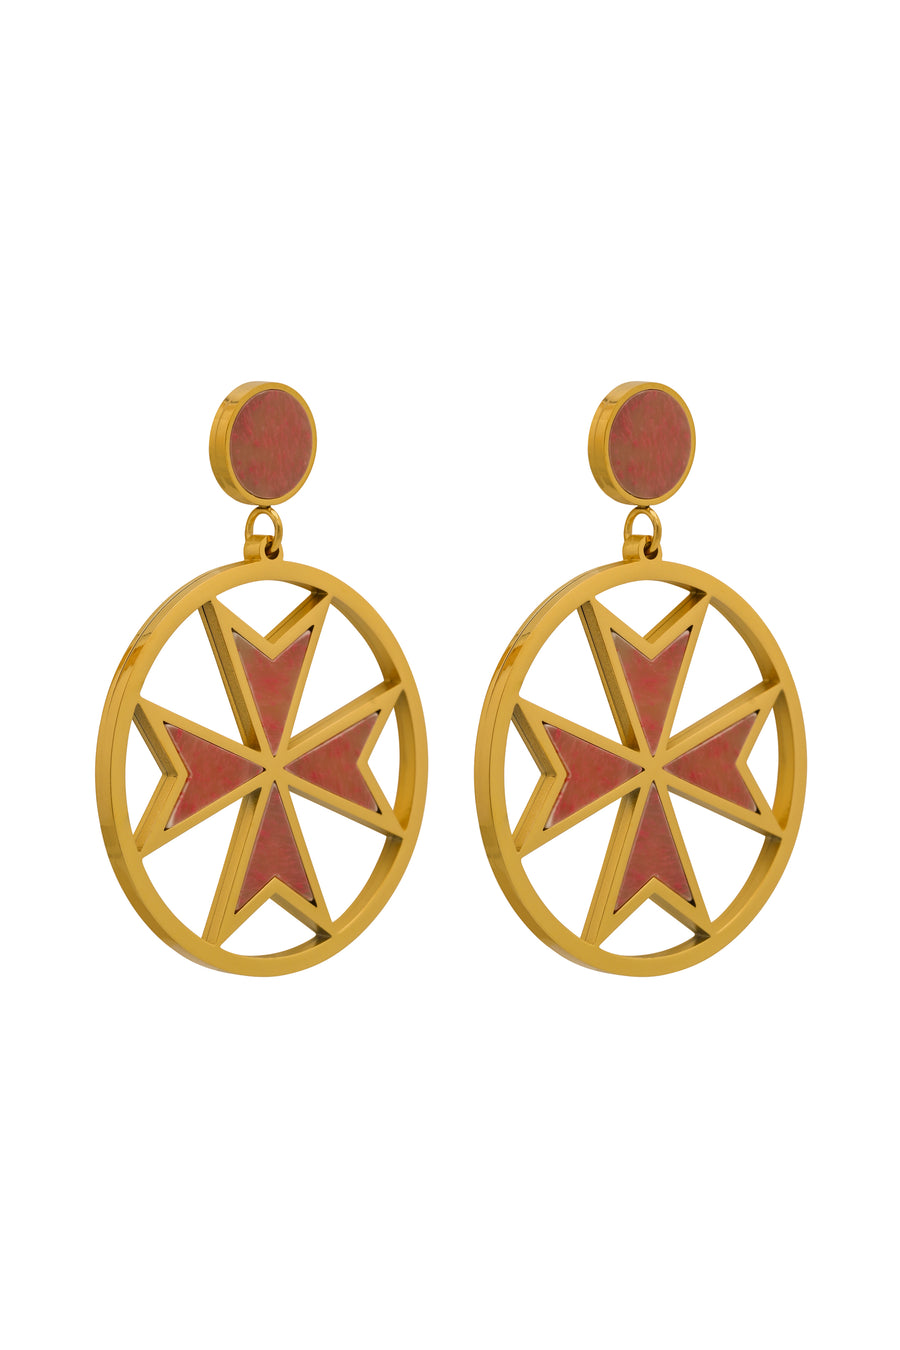 The Pink Marble Maltese Cross Pendant & Earrings Gift Set